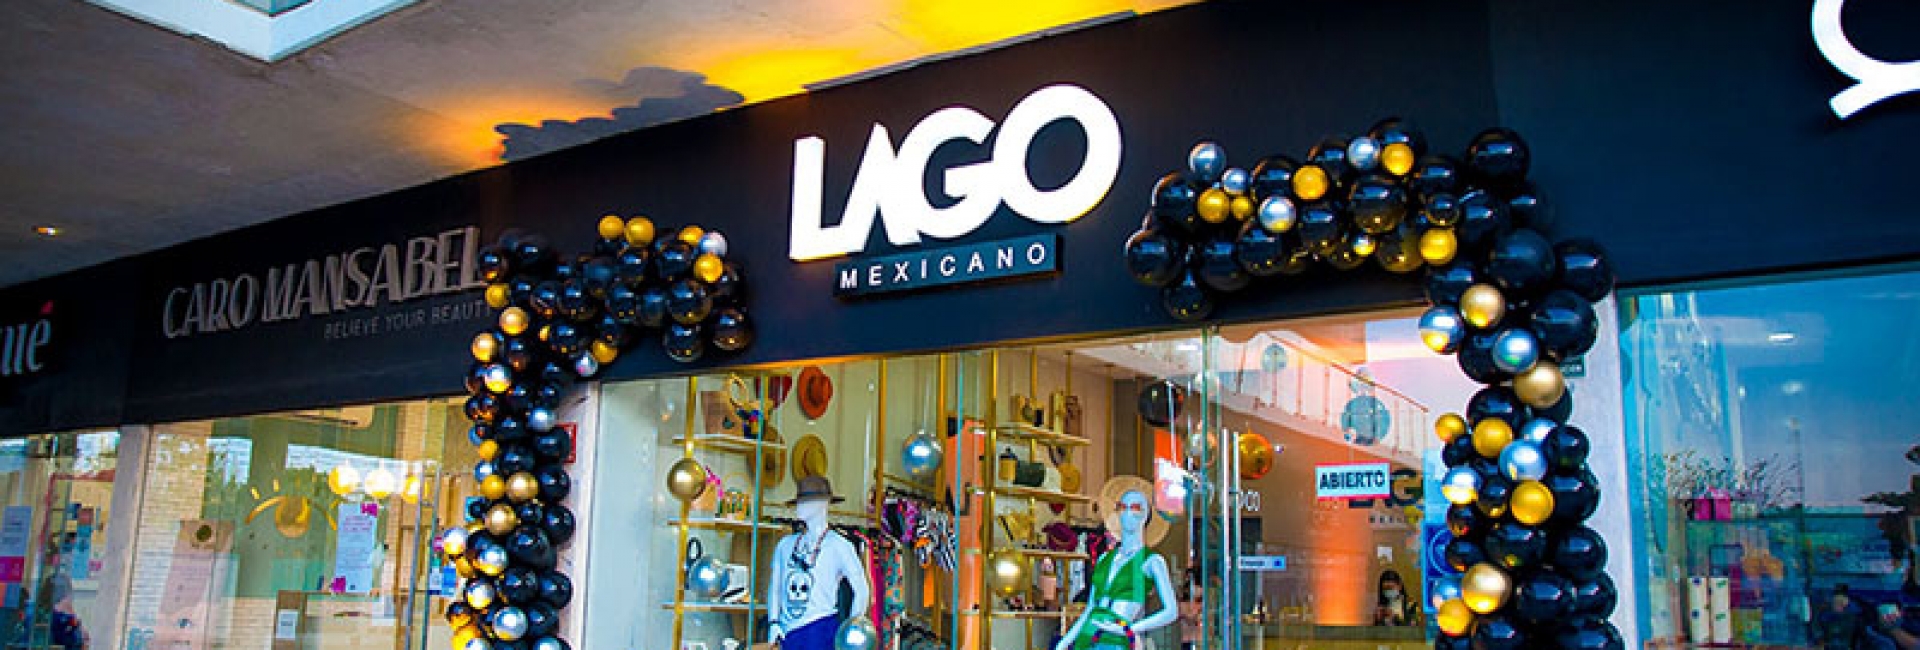 Reinauguración de la tienda Lago Mexicano, un showroom de marcas mexicanas.